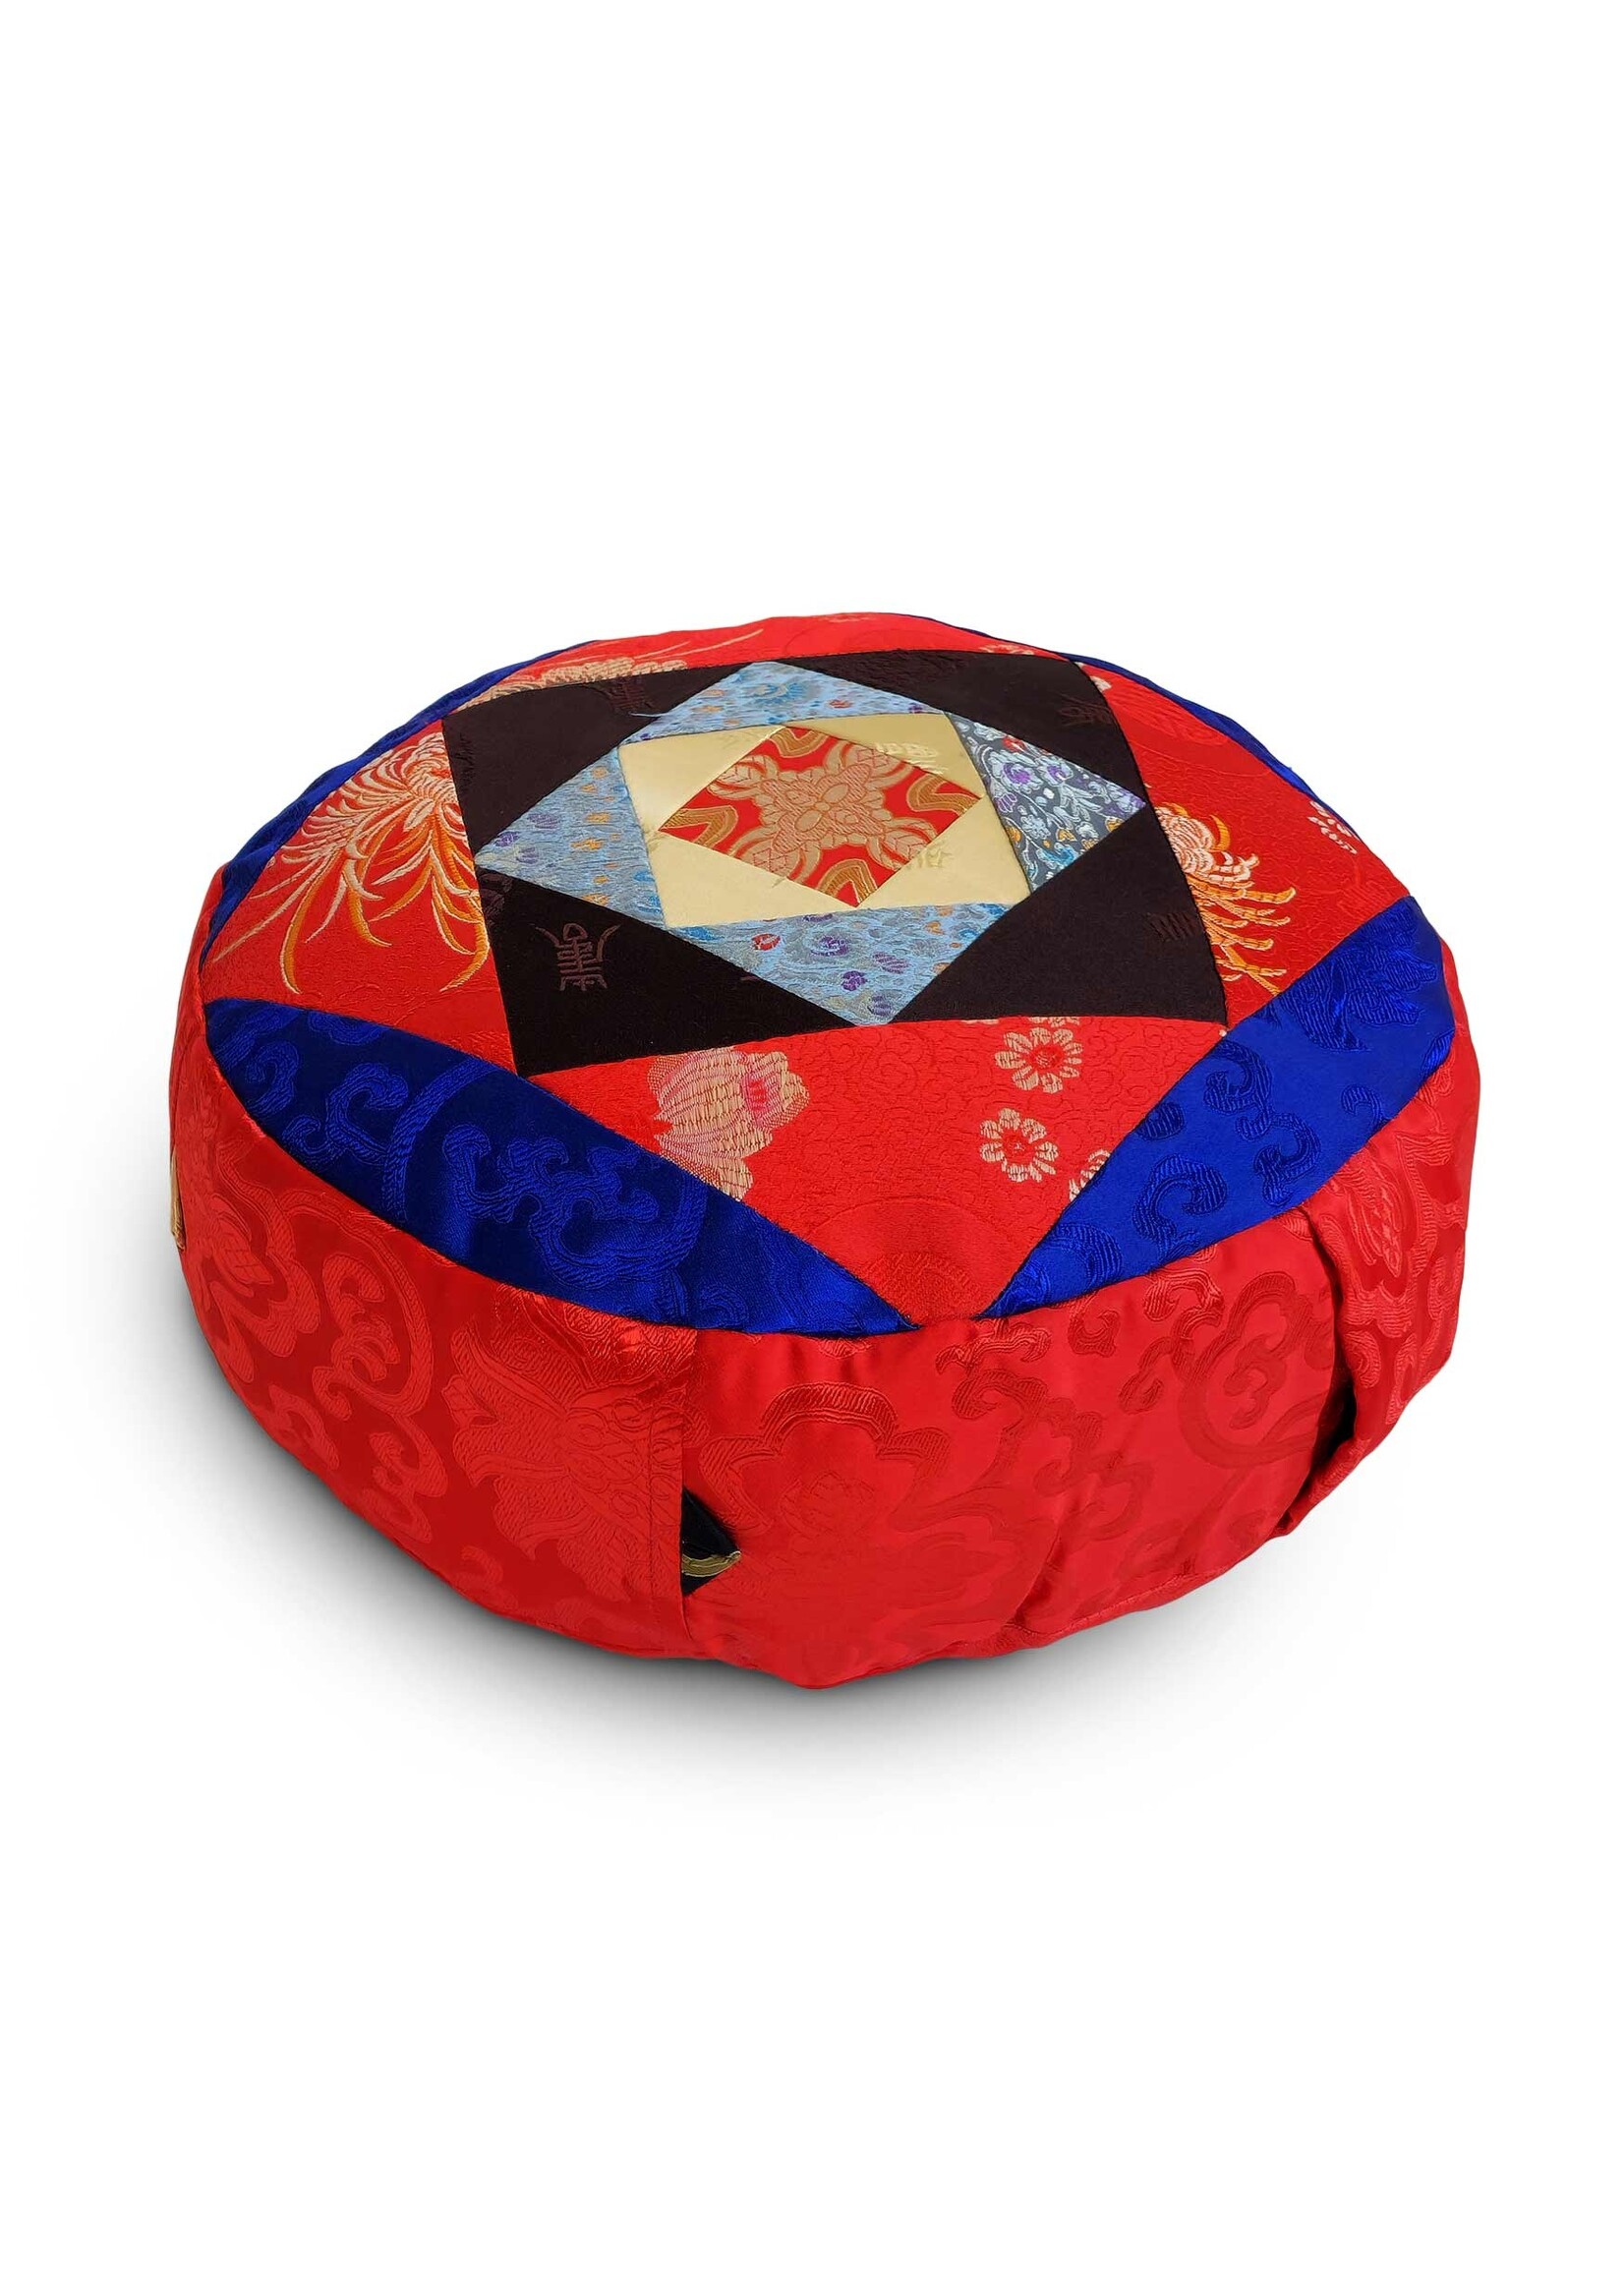 Tibetisches Zafu Meditationskissen aus Seidenbrokat mit Kapokfüllung, rot